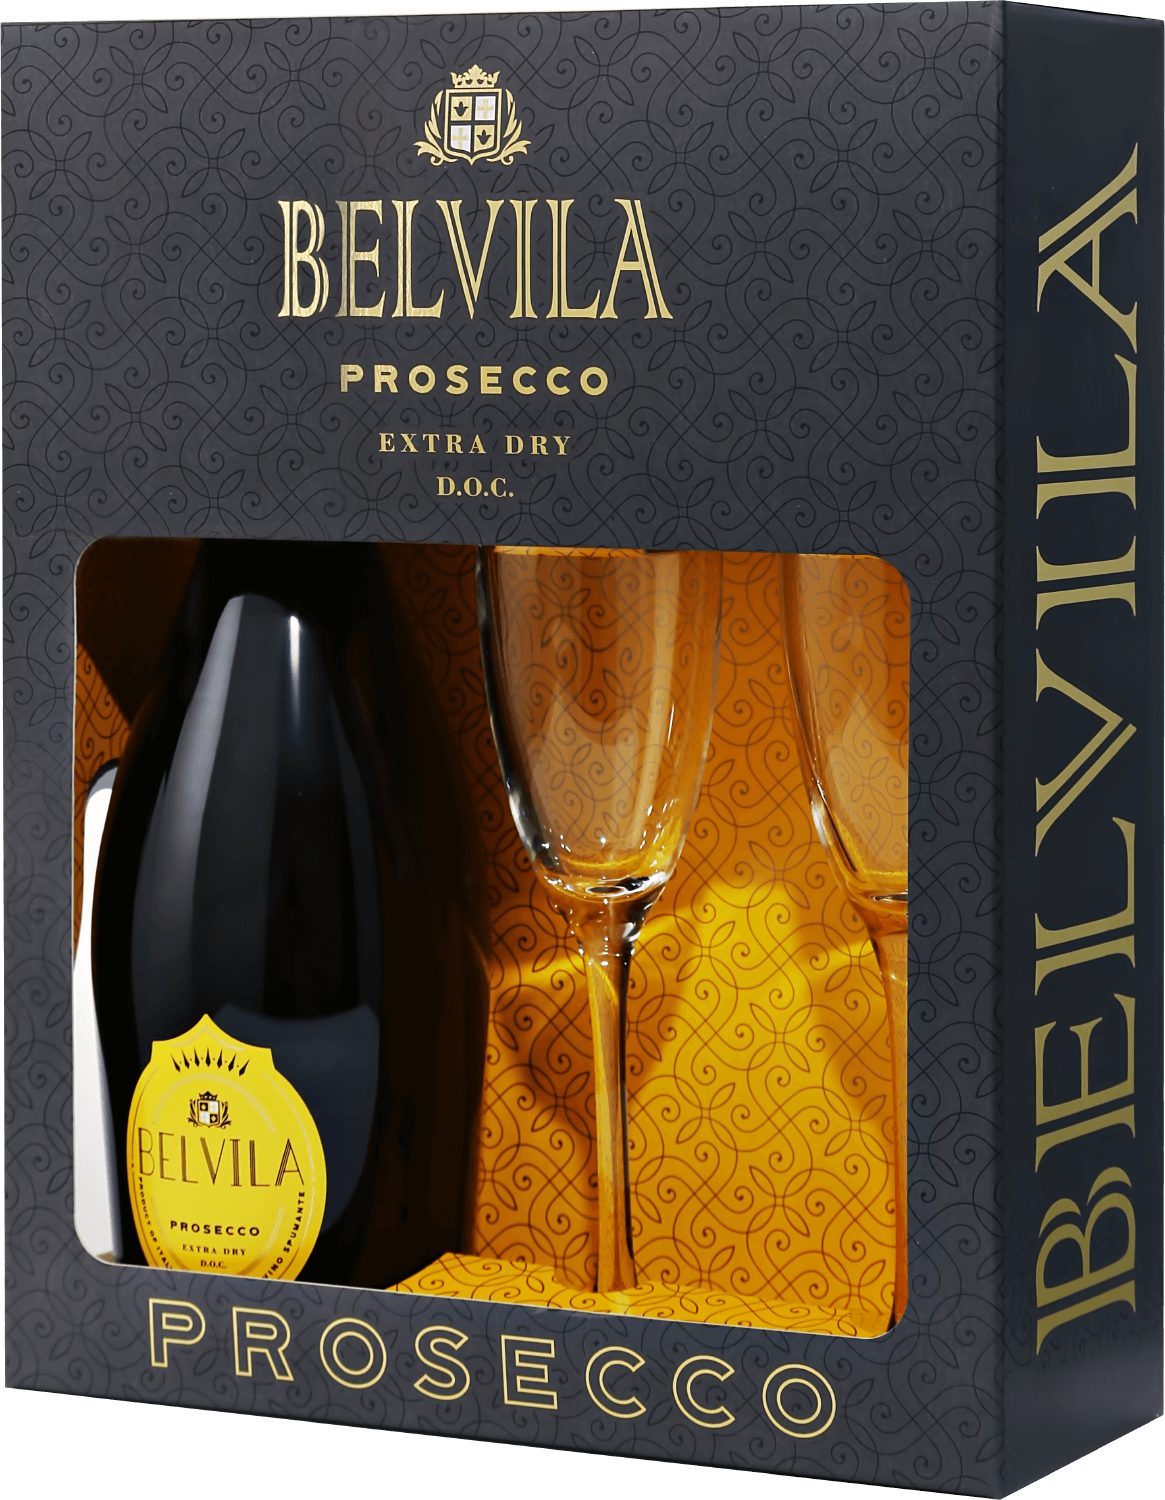 Belvila Prosecco DOC Spumante Extra Dry Villa Degli Olmi (gift box with 2 glasses)